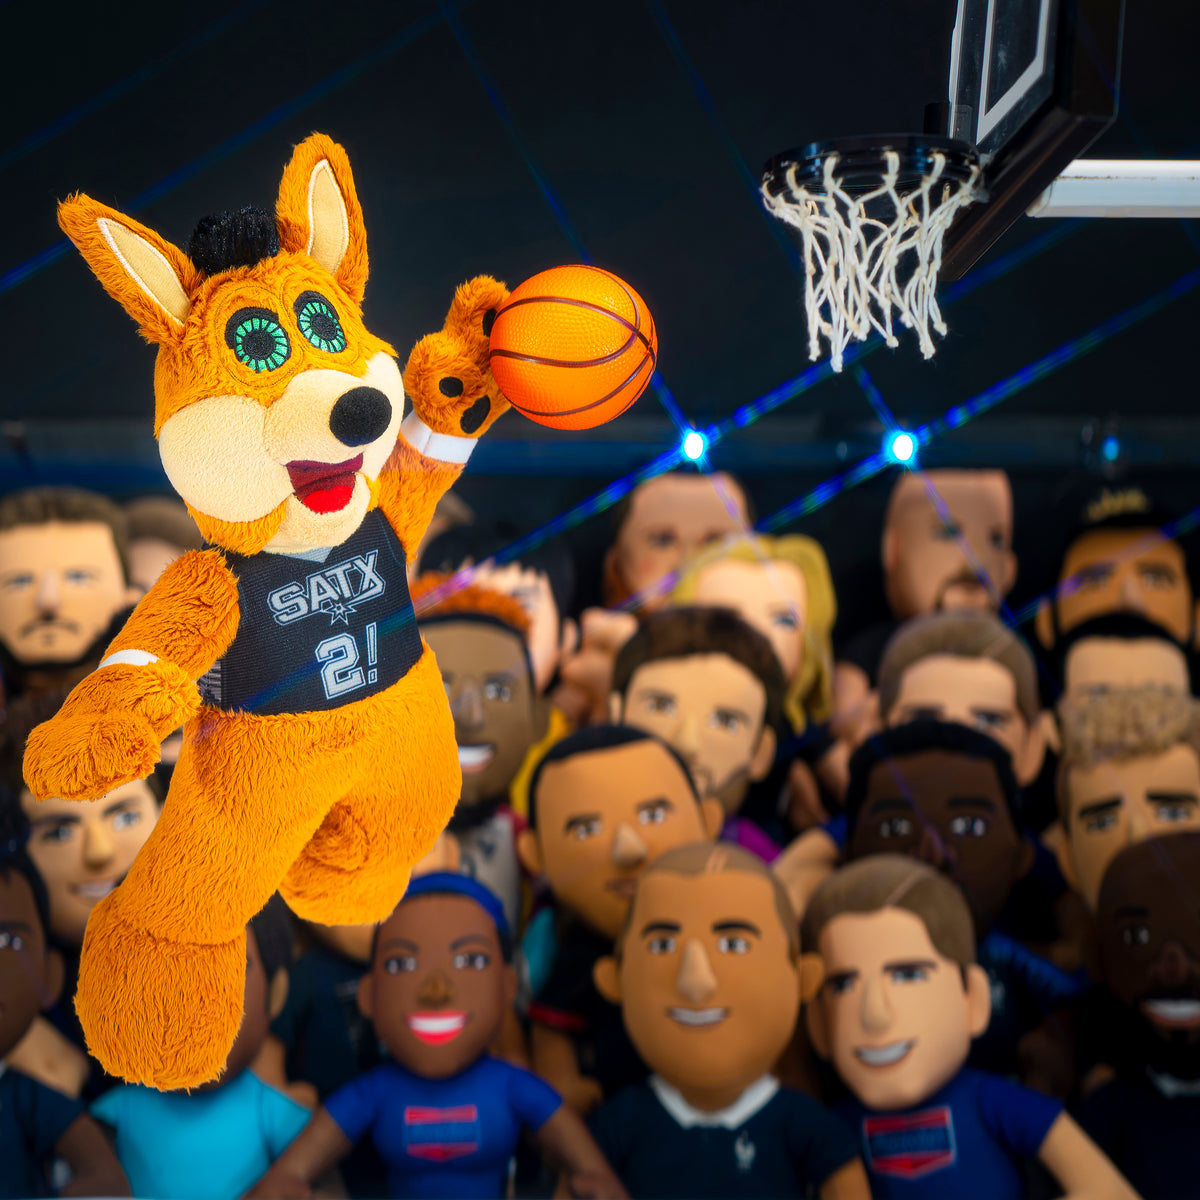 San Antonio Spurs Coyote 10&quot; Mascot Plush Figure (Statement Uniform)